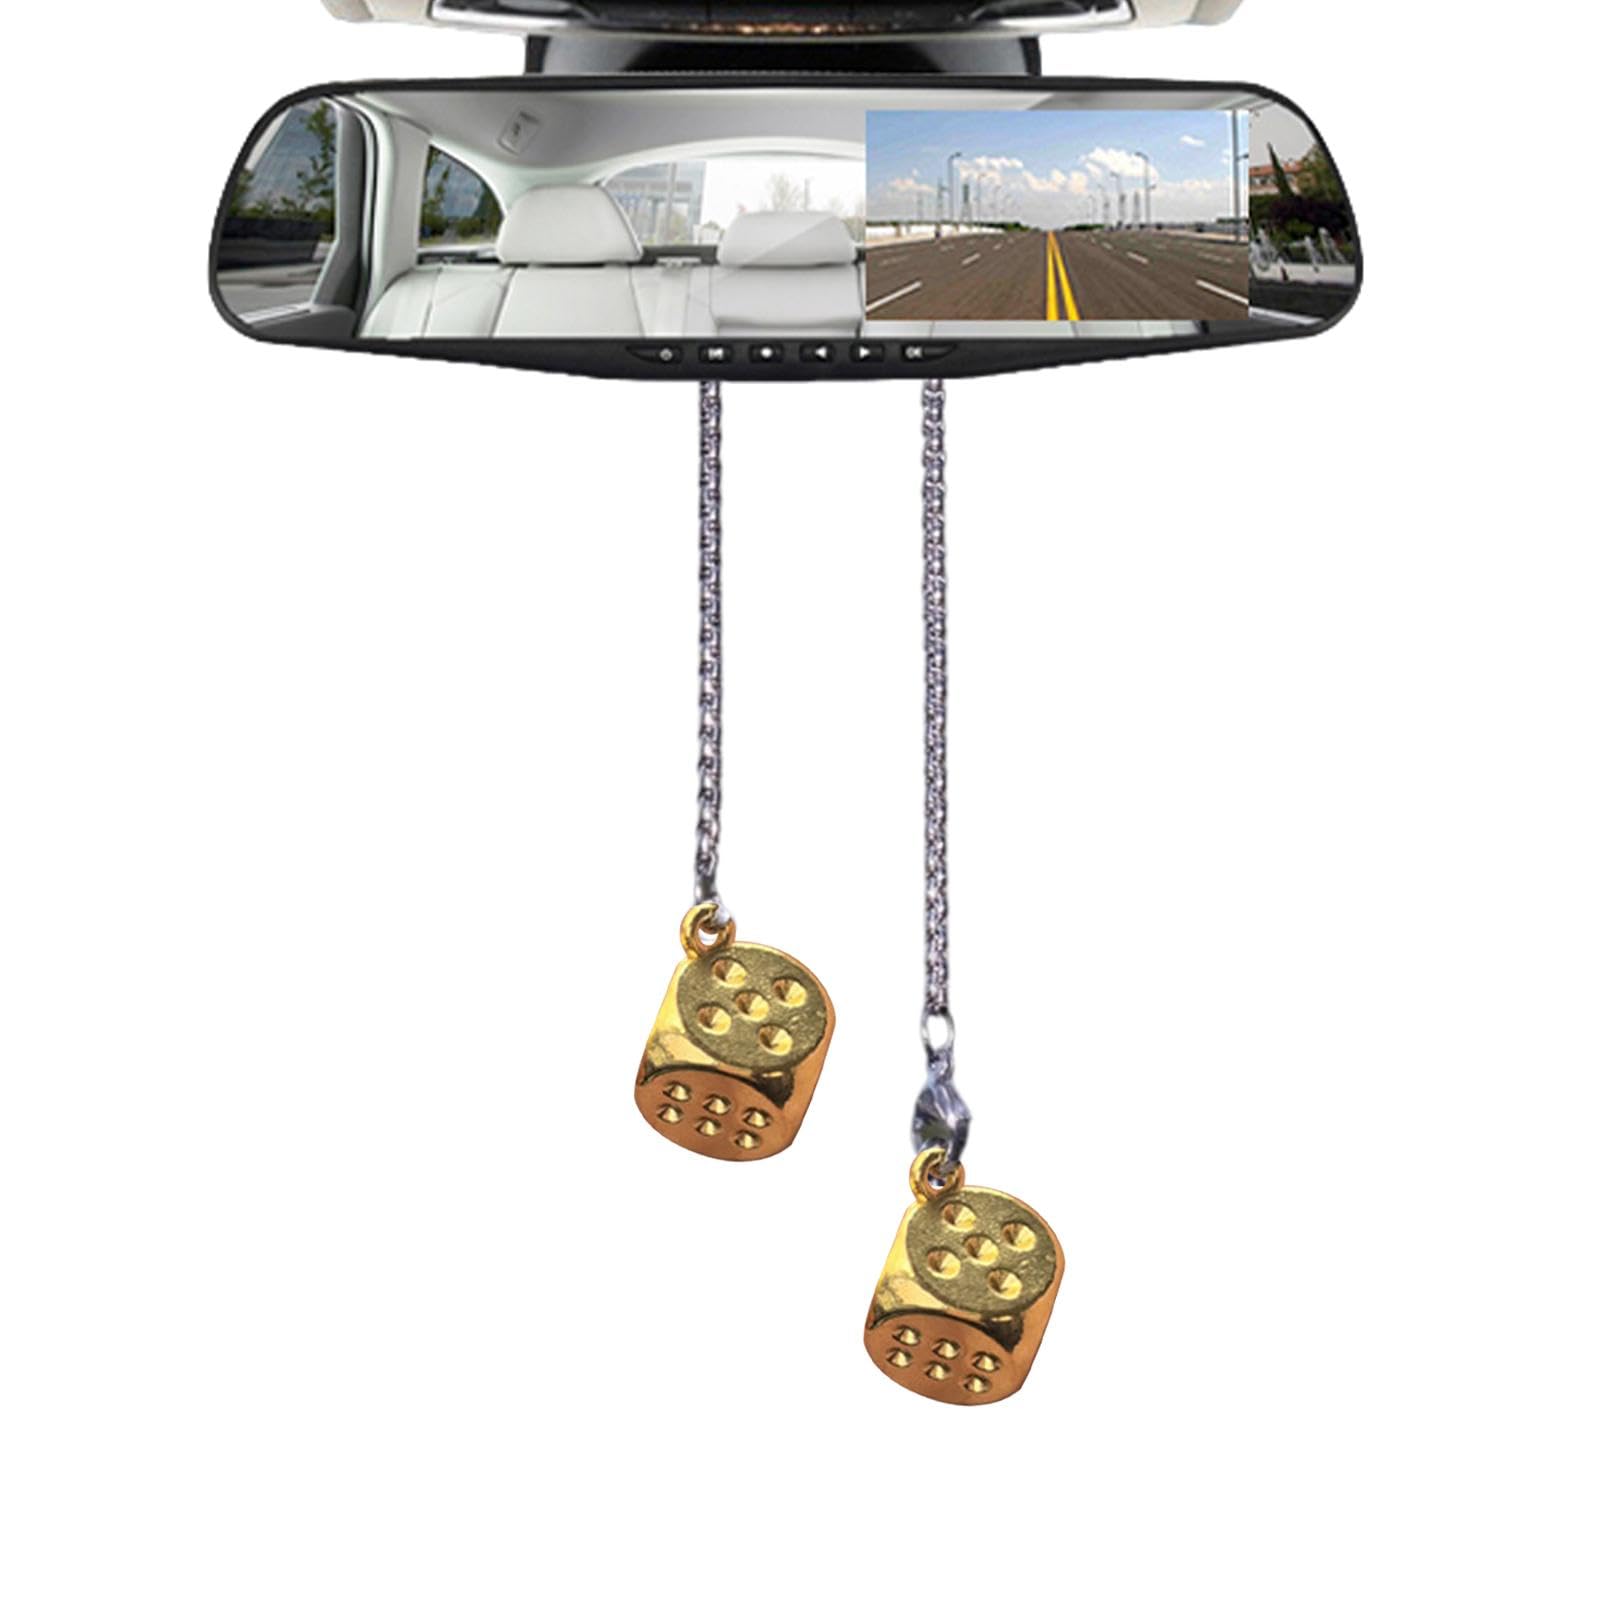 Gruwkue Rückspiegel-Ornamente,Rückspiegel-Aufhängeornament | Aufhängbare Schlüsselanhänger aus Legierung in Würfelform | Niedliche hängende Ornamente, dekoratives, stilvolles Retro-Fahrzeugzubehör für von Gruwkue